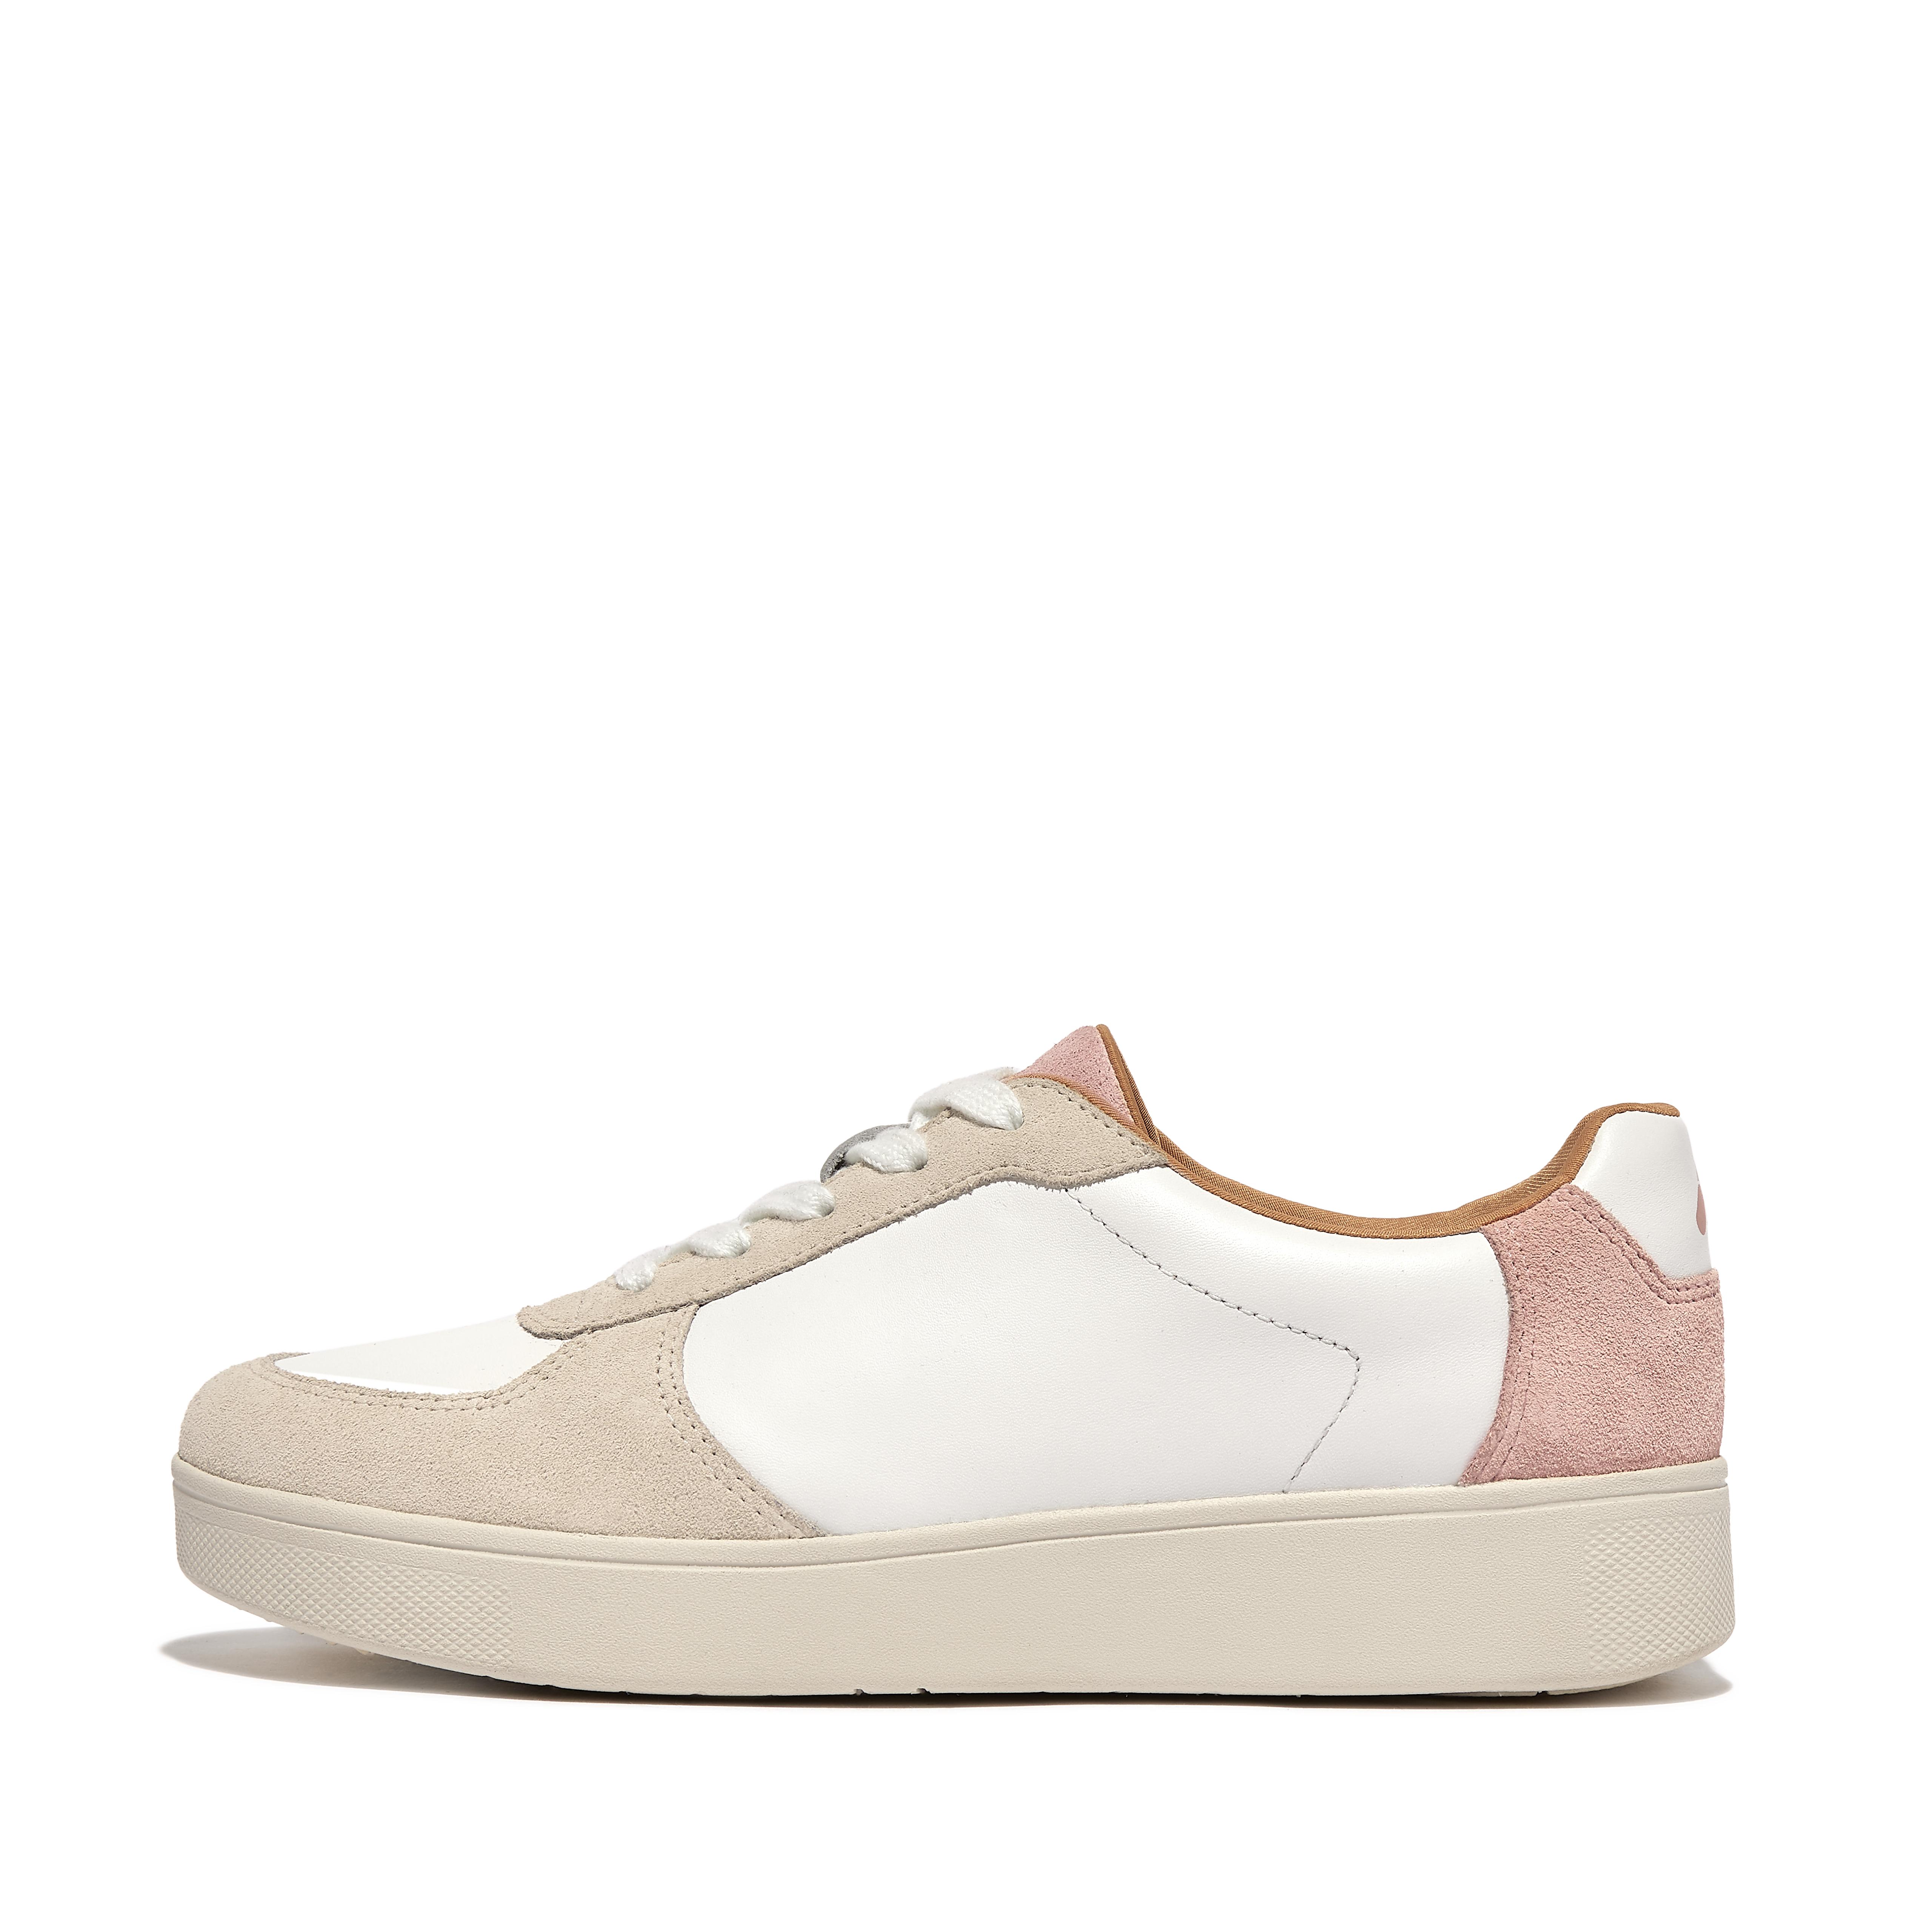 핏플랍 Fitflop Leather/Suede Panel Sneakers,Urban White/Pink Salt